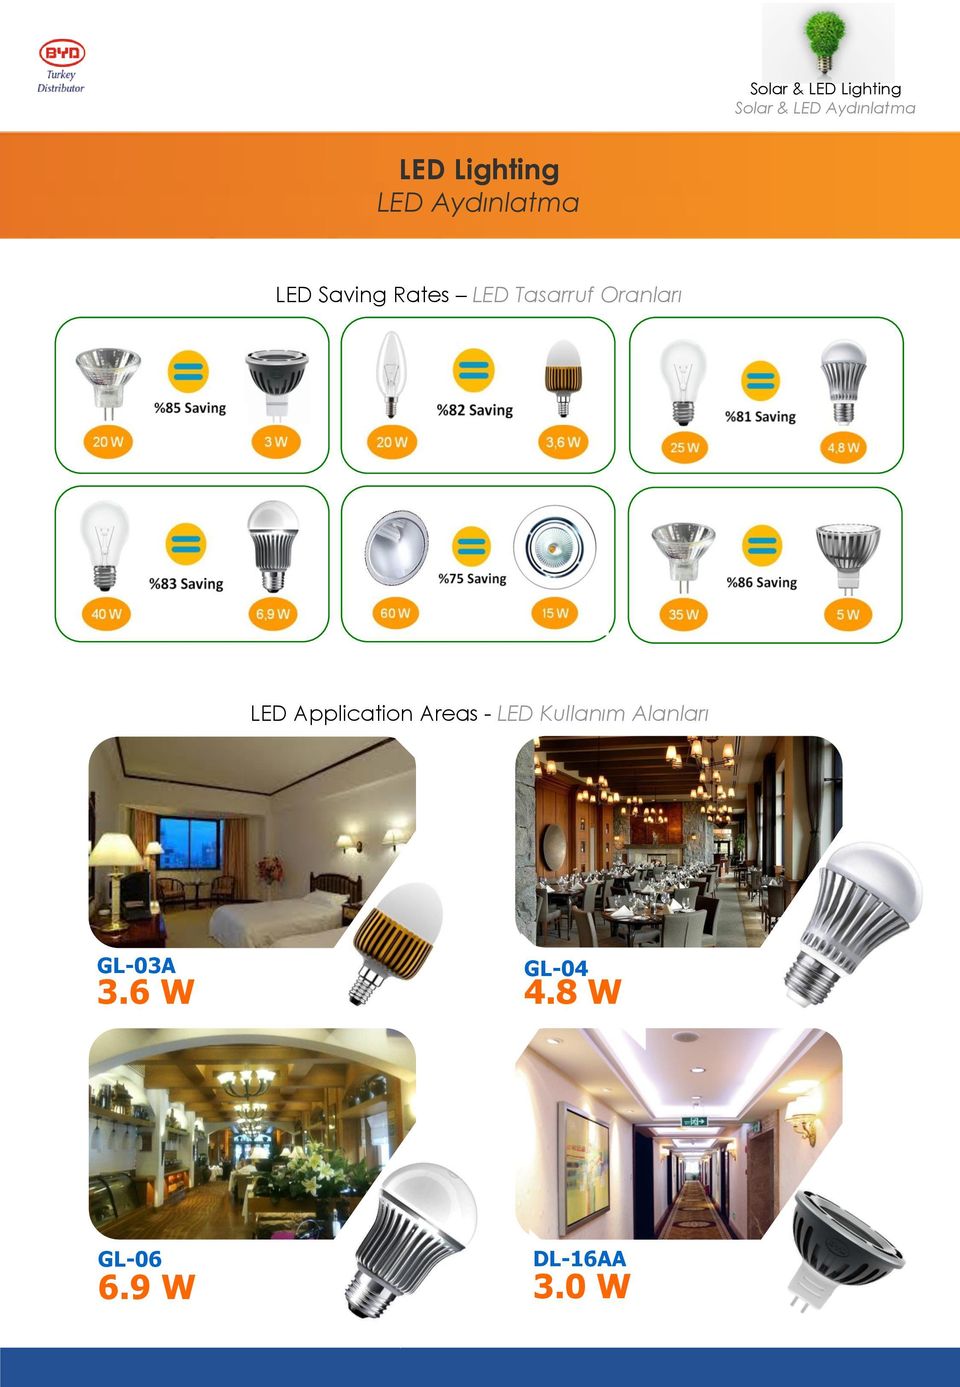 Tasarruf Oranları LED Application Areas - LED